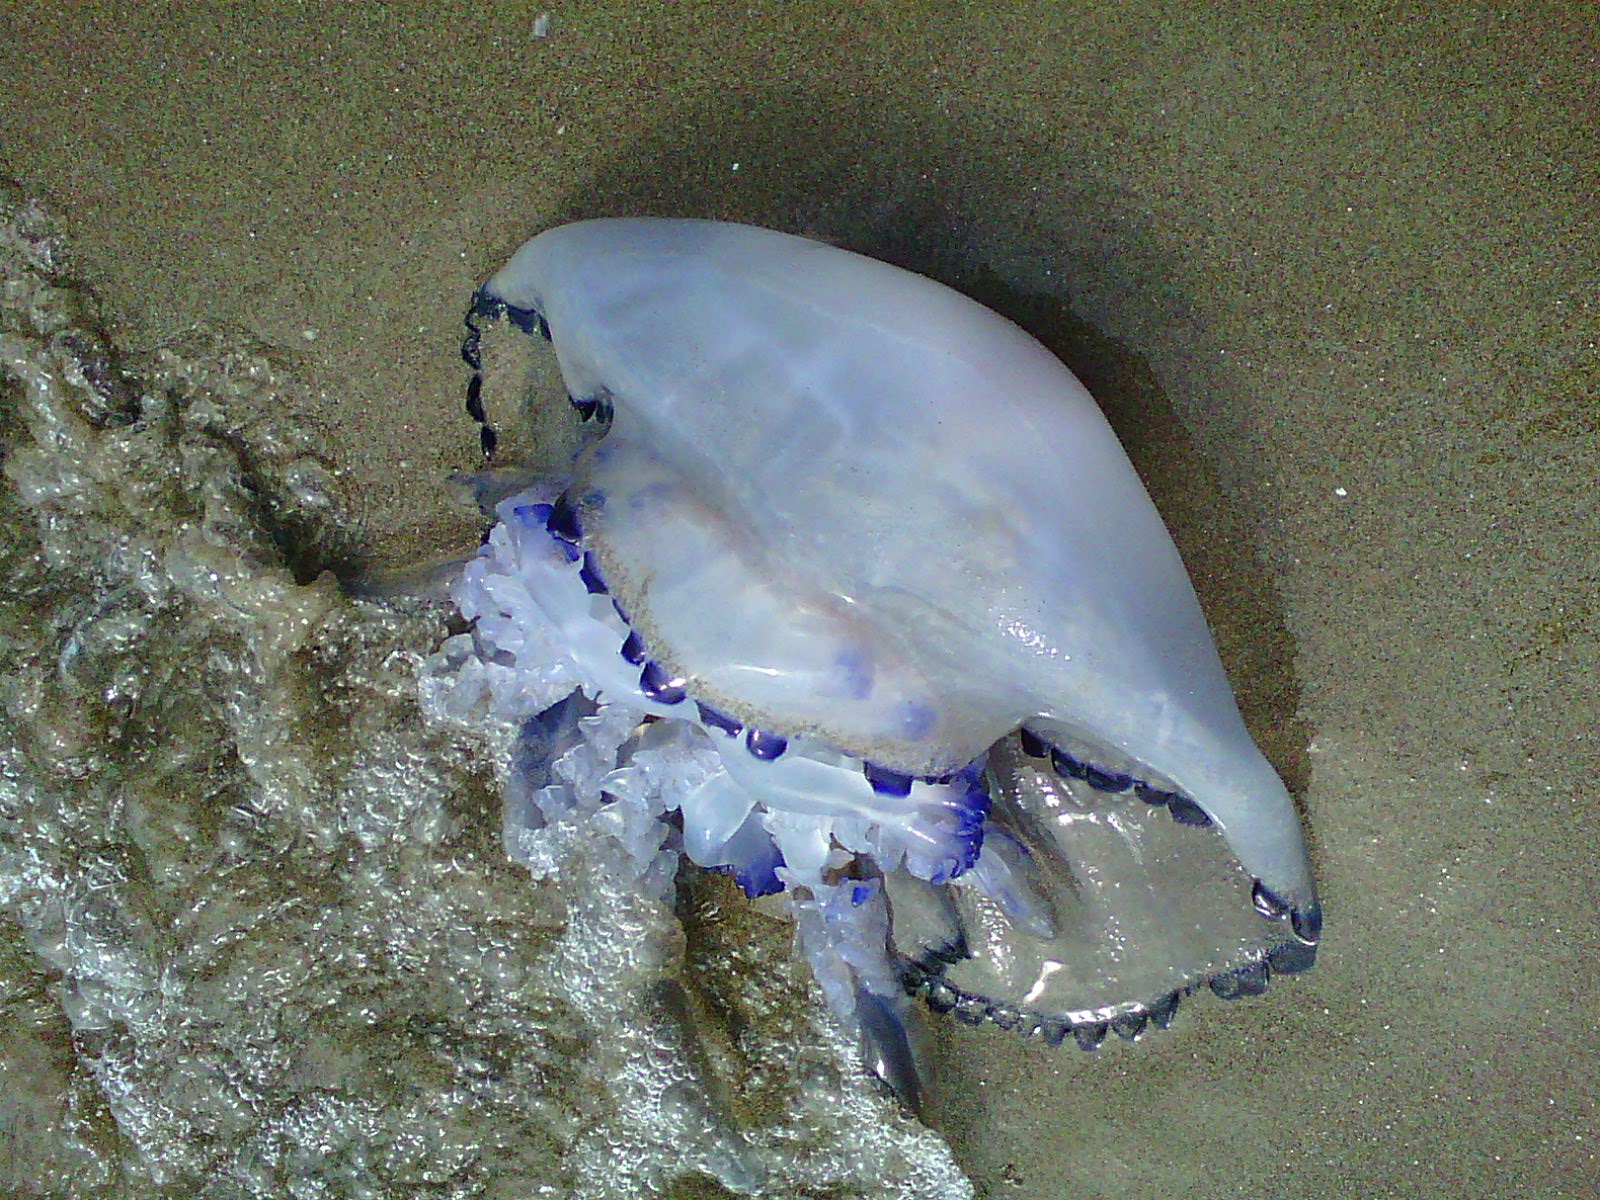 La medusa